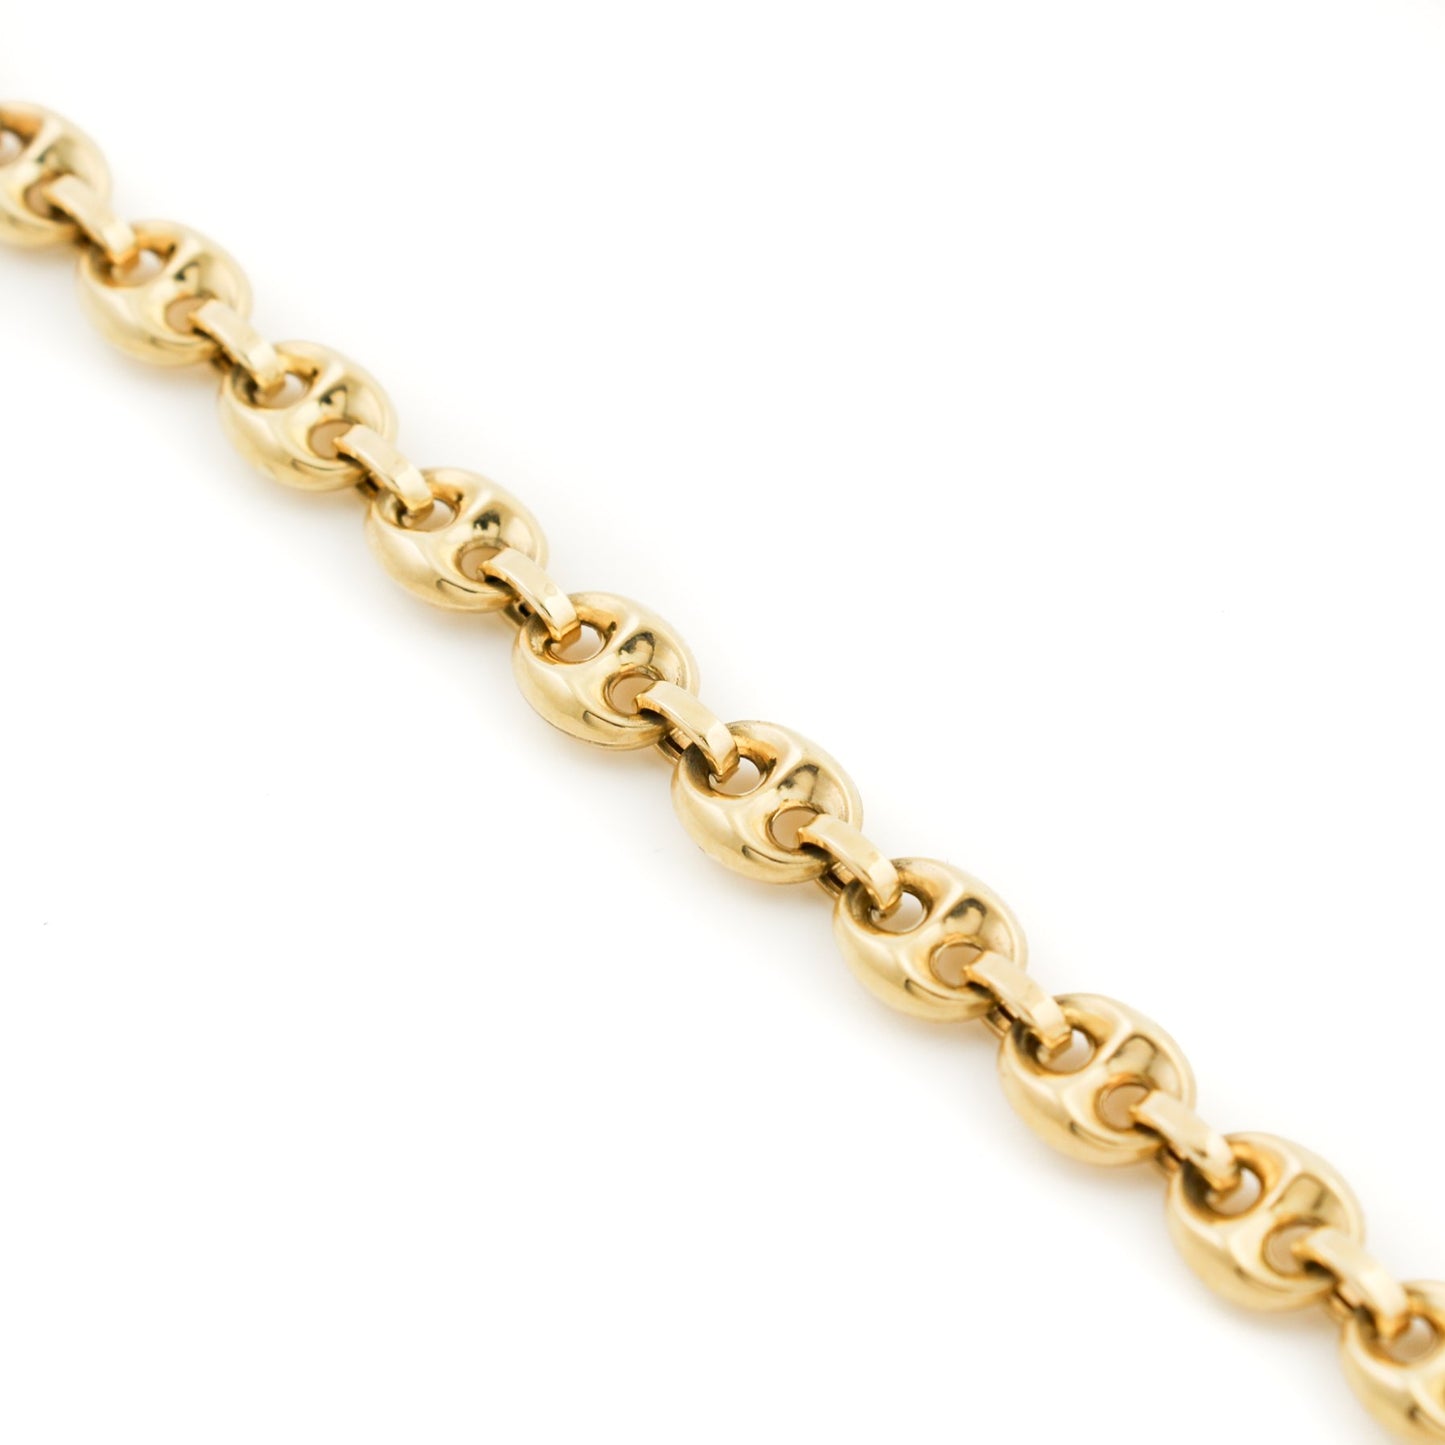 10K Gold x 7mm Puff Gucci Bracelet - Kingdom Jewelry